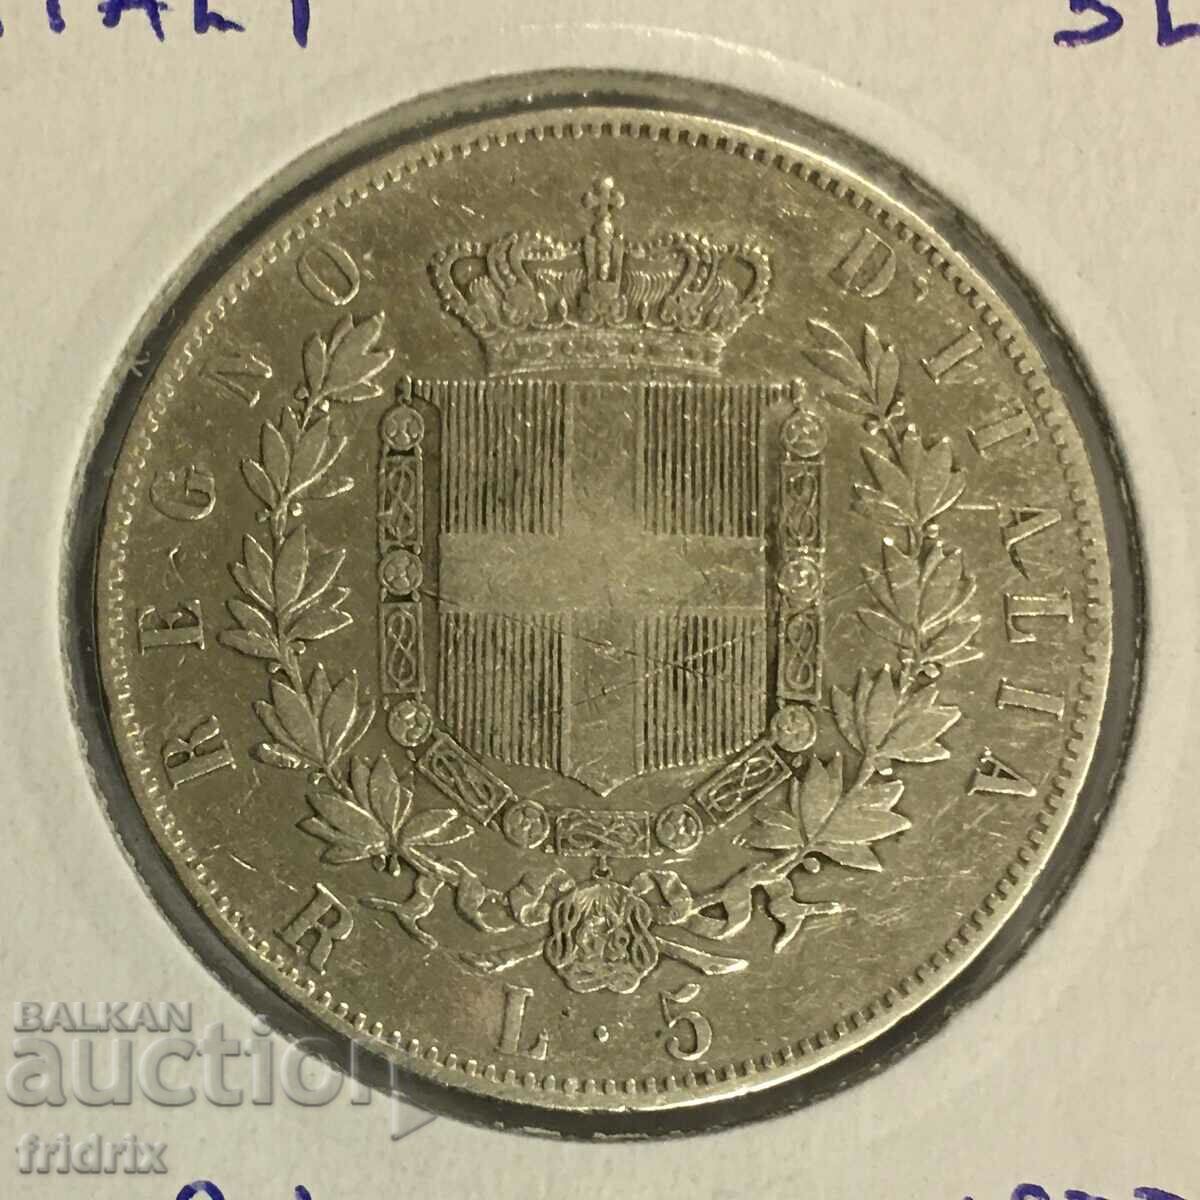 Италия 1877 R / Italy 5 lira 1877 R